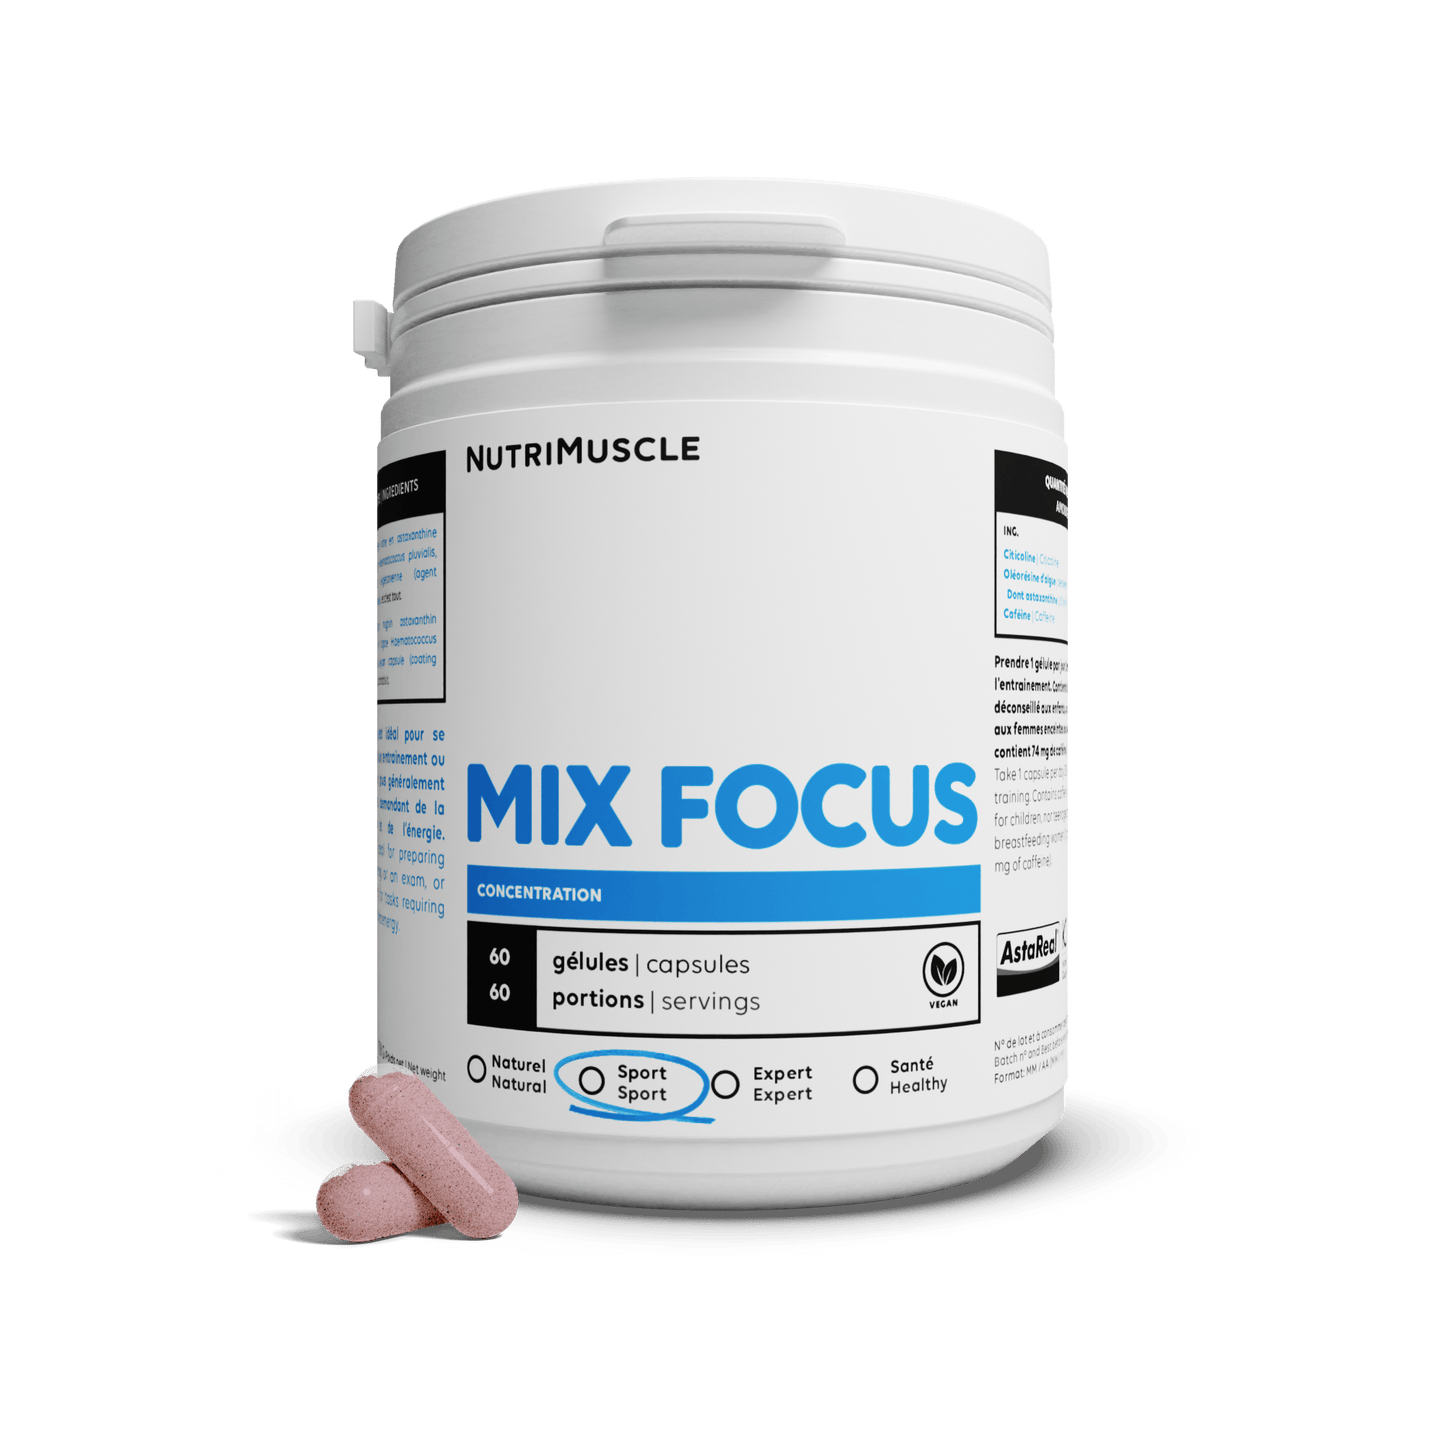 Nutrimuscle Nutriments 60 gélules Mix Focus